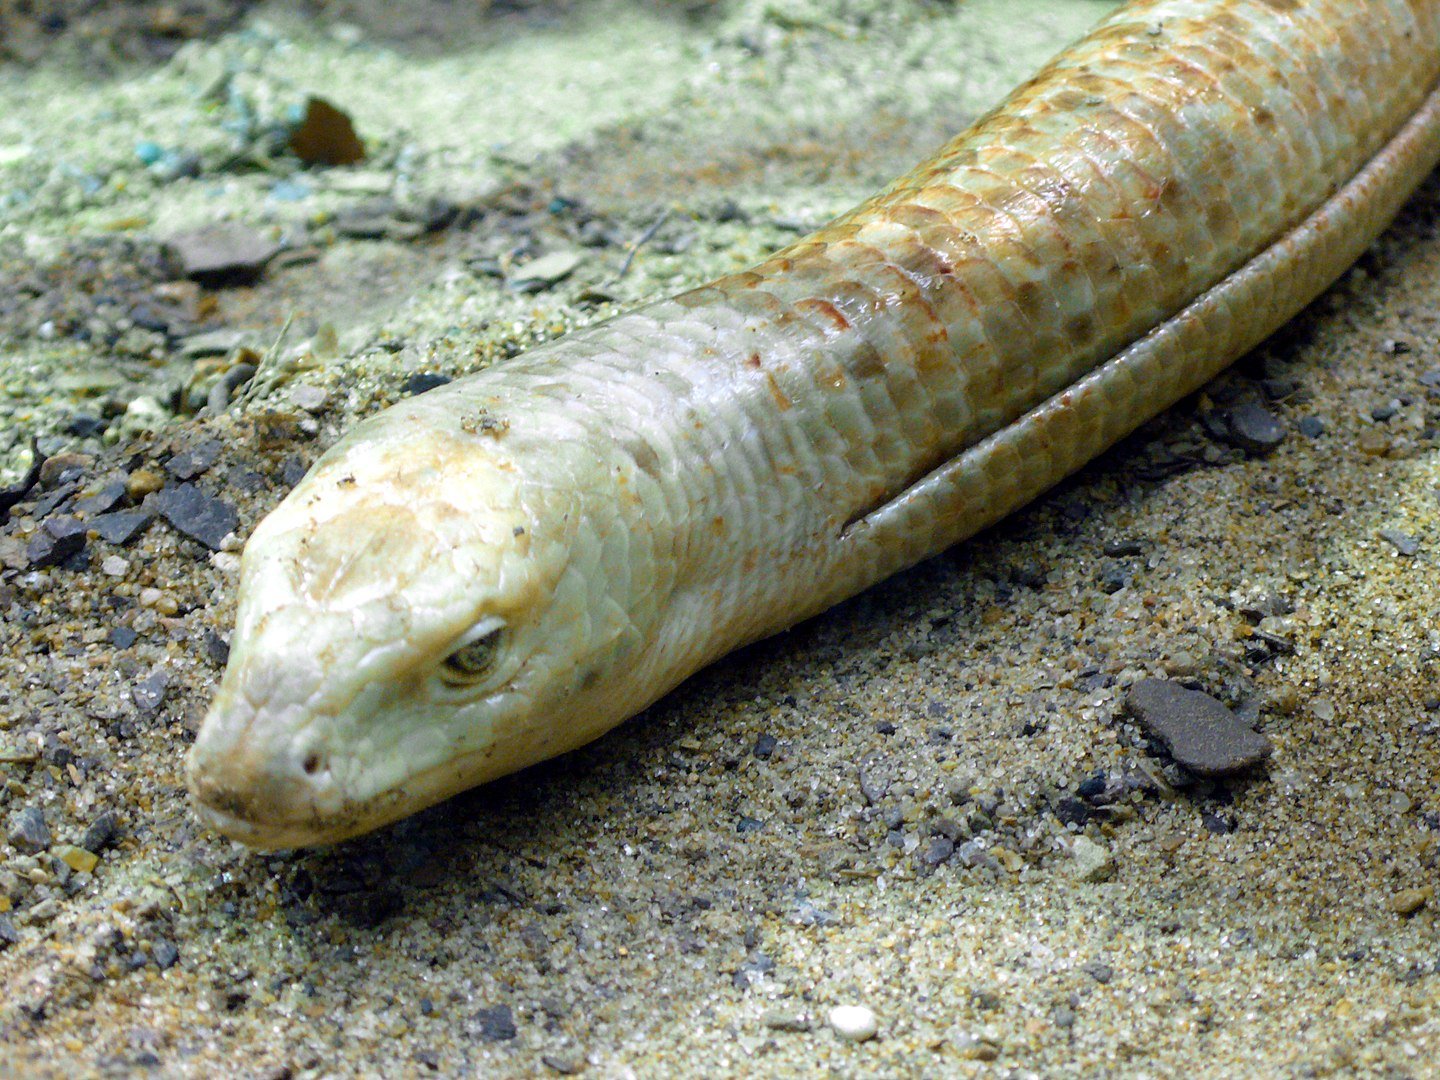 Essa espécie de lagarto sem pernas provavelmente fazia parte da dieta (Fonte: Wikimedia Commons)